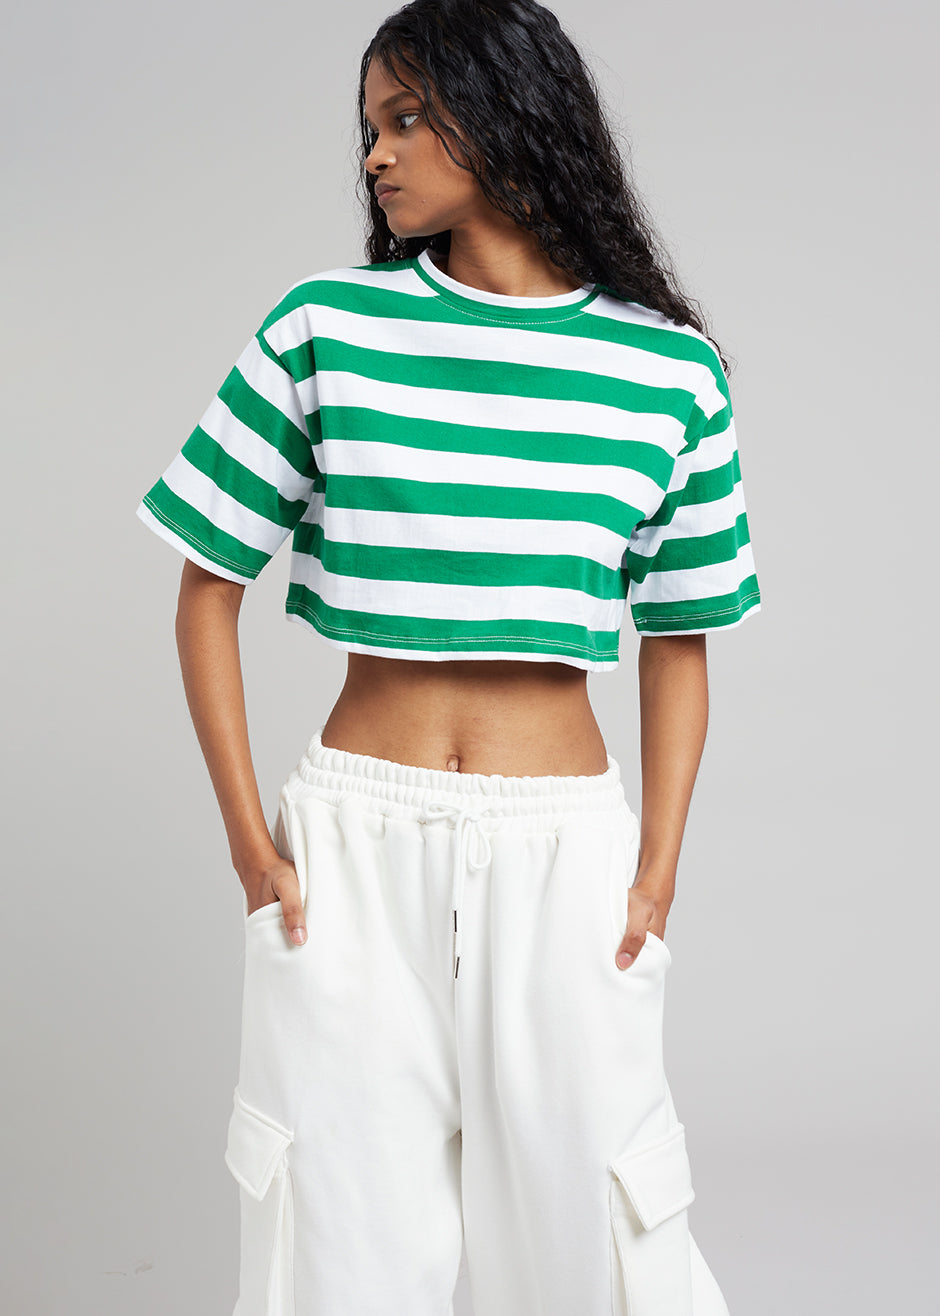 Karina Cropped T-Shirt - Green/White - 3